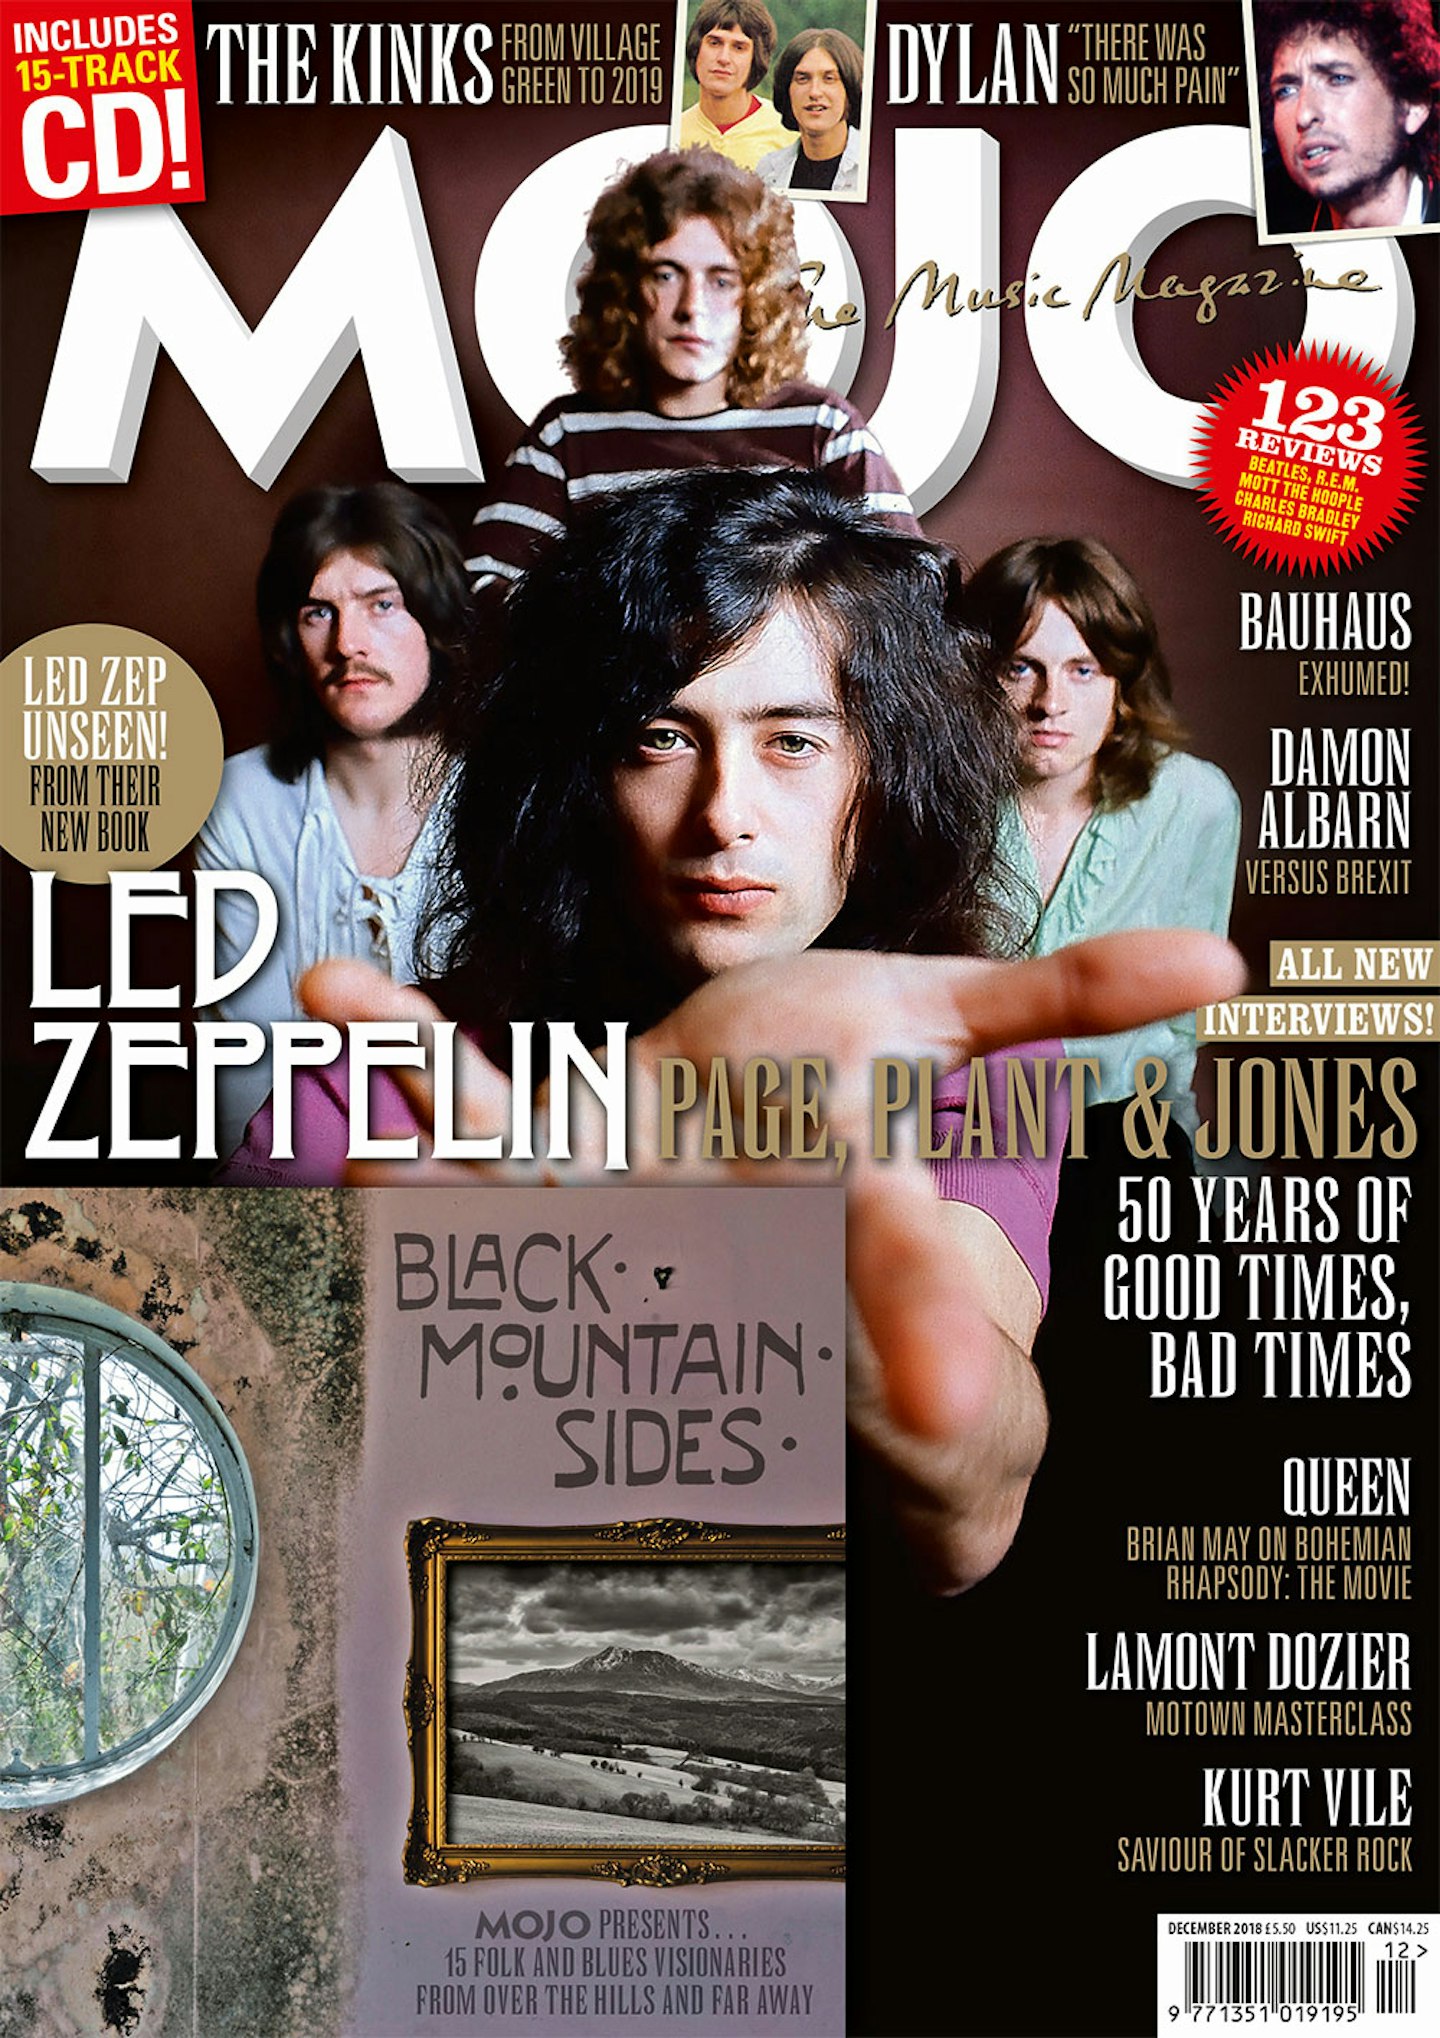 MOJO 301 – December 2018: Led Zeppelin